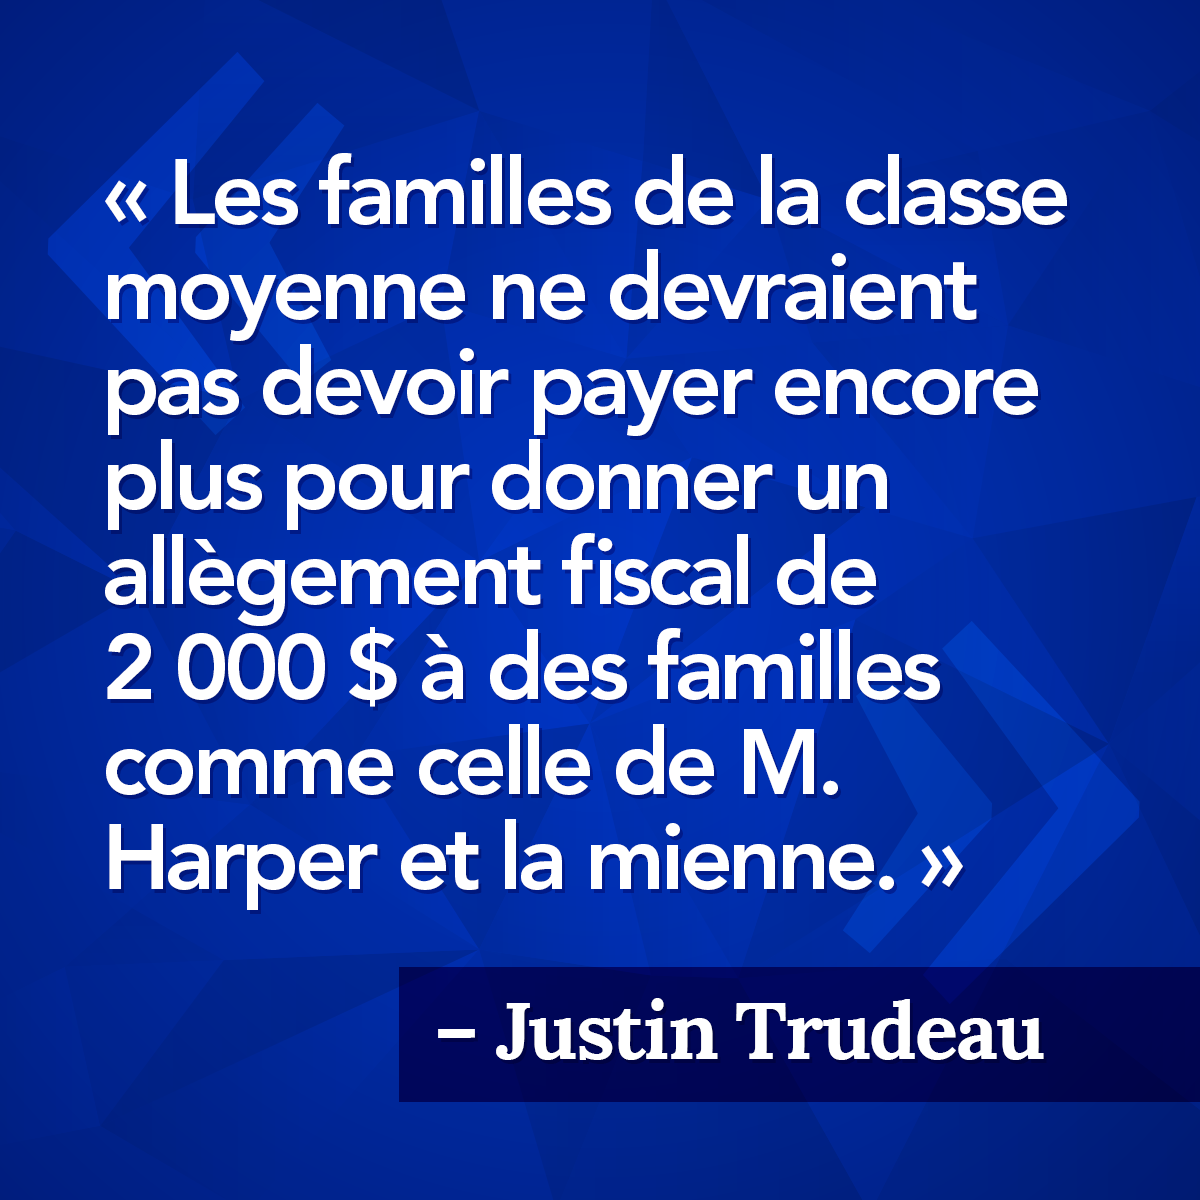 Les familles de la classe moyenne ne devraient pas devoir payer encore plus pour donner un allègement fiscal de 2 000 $ à des familles comme celle de M. Harper et la mienne. - Justin Trudeau